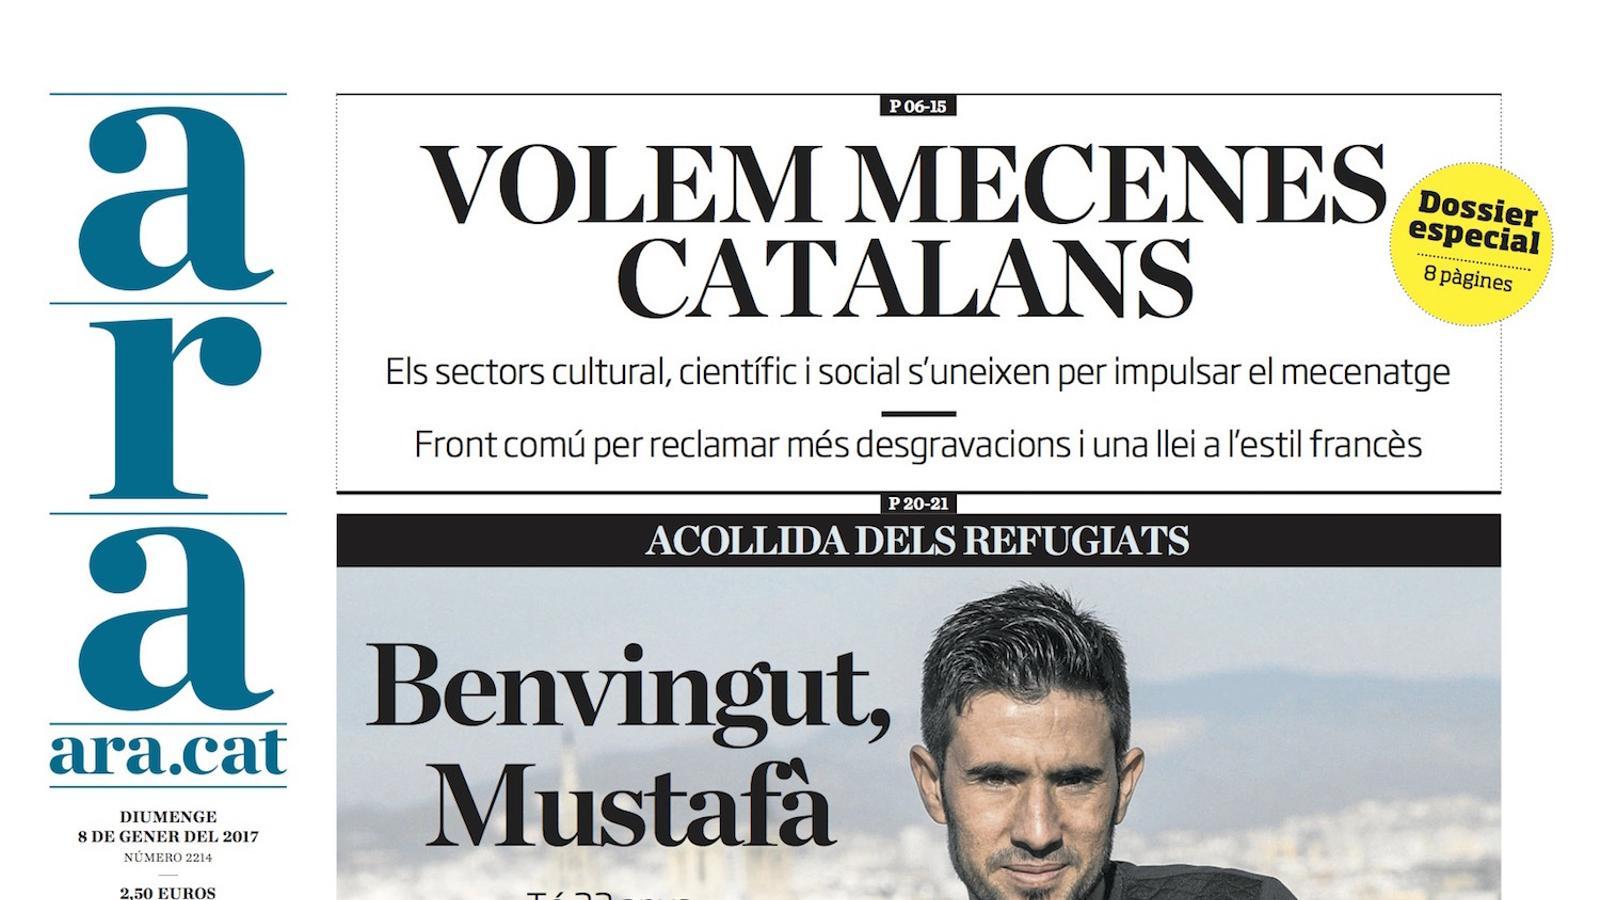 "Volem mecenes catalans", a la portada de l'ARA